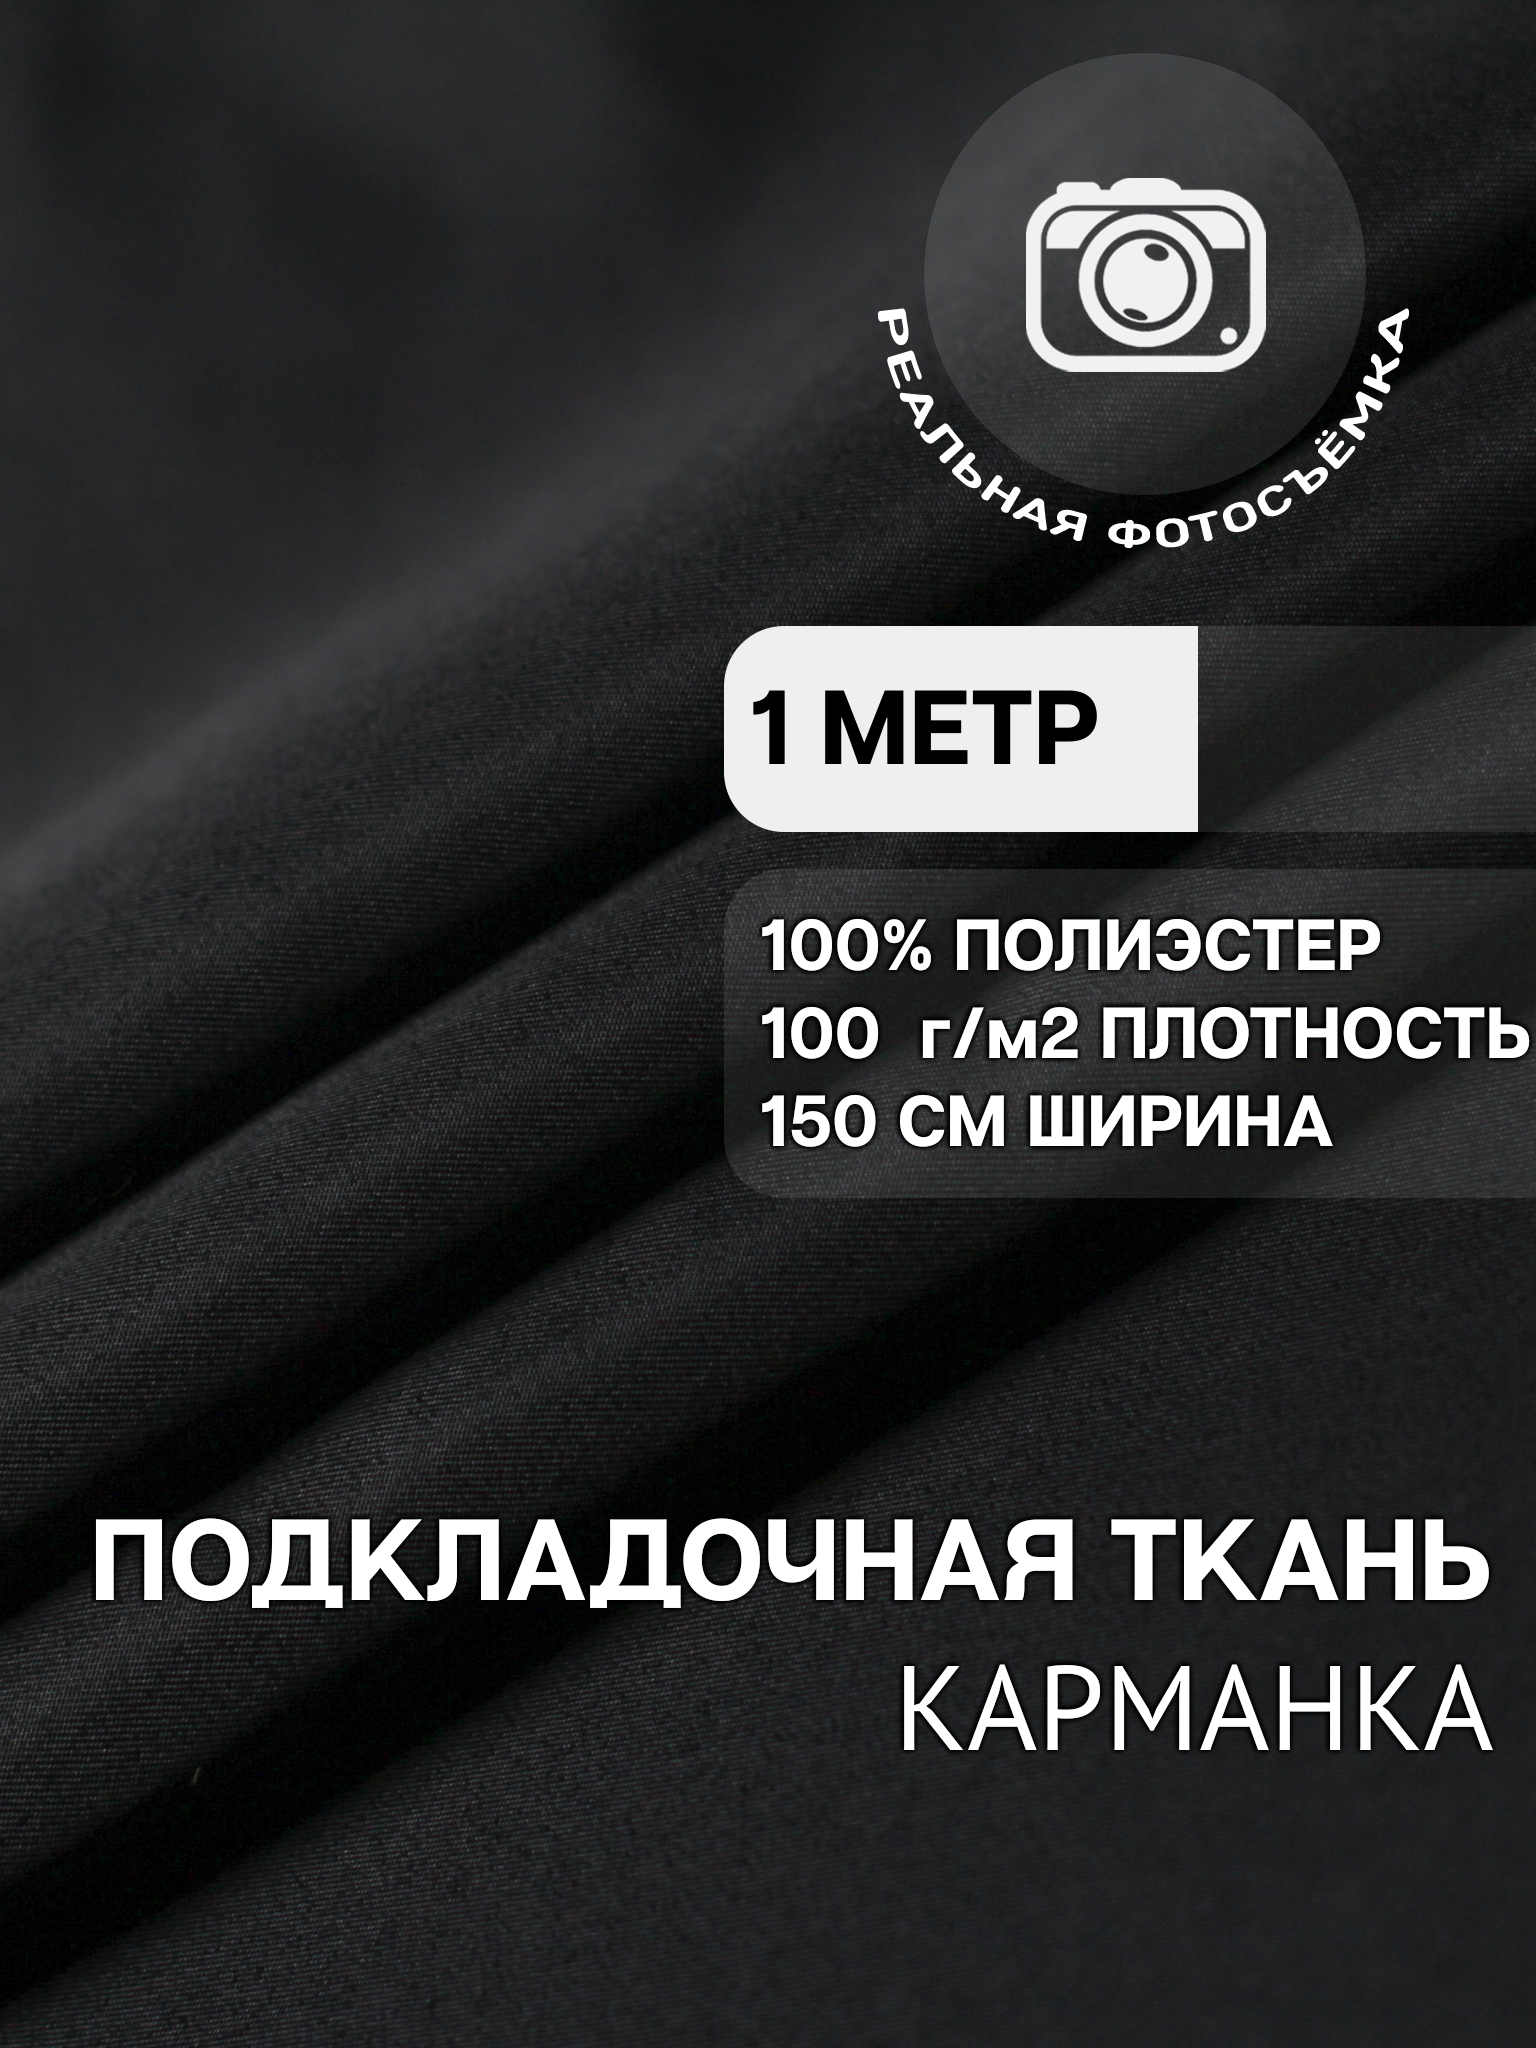 Ткань карманная подкладочная чёрная для одежды MDC FABRICS K100/4 для шитья. Полиэстер 100%. Отрез 1 метр